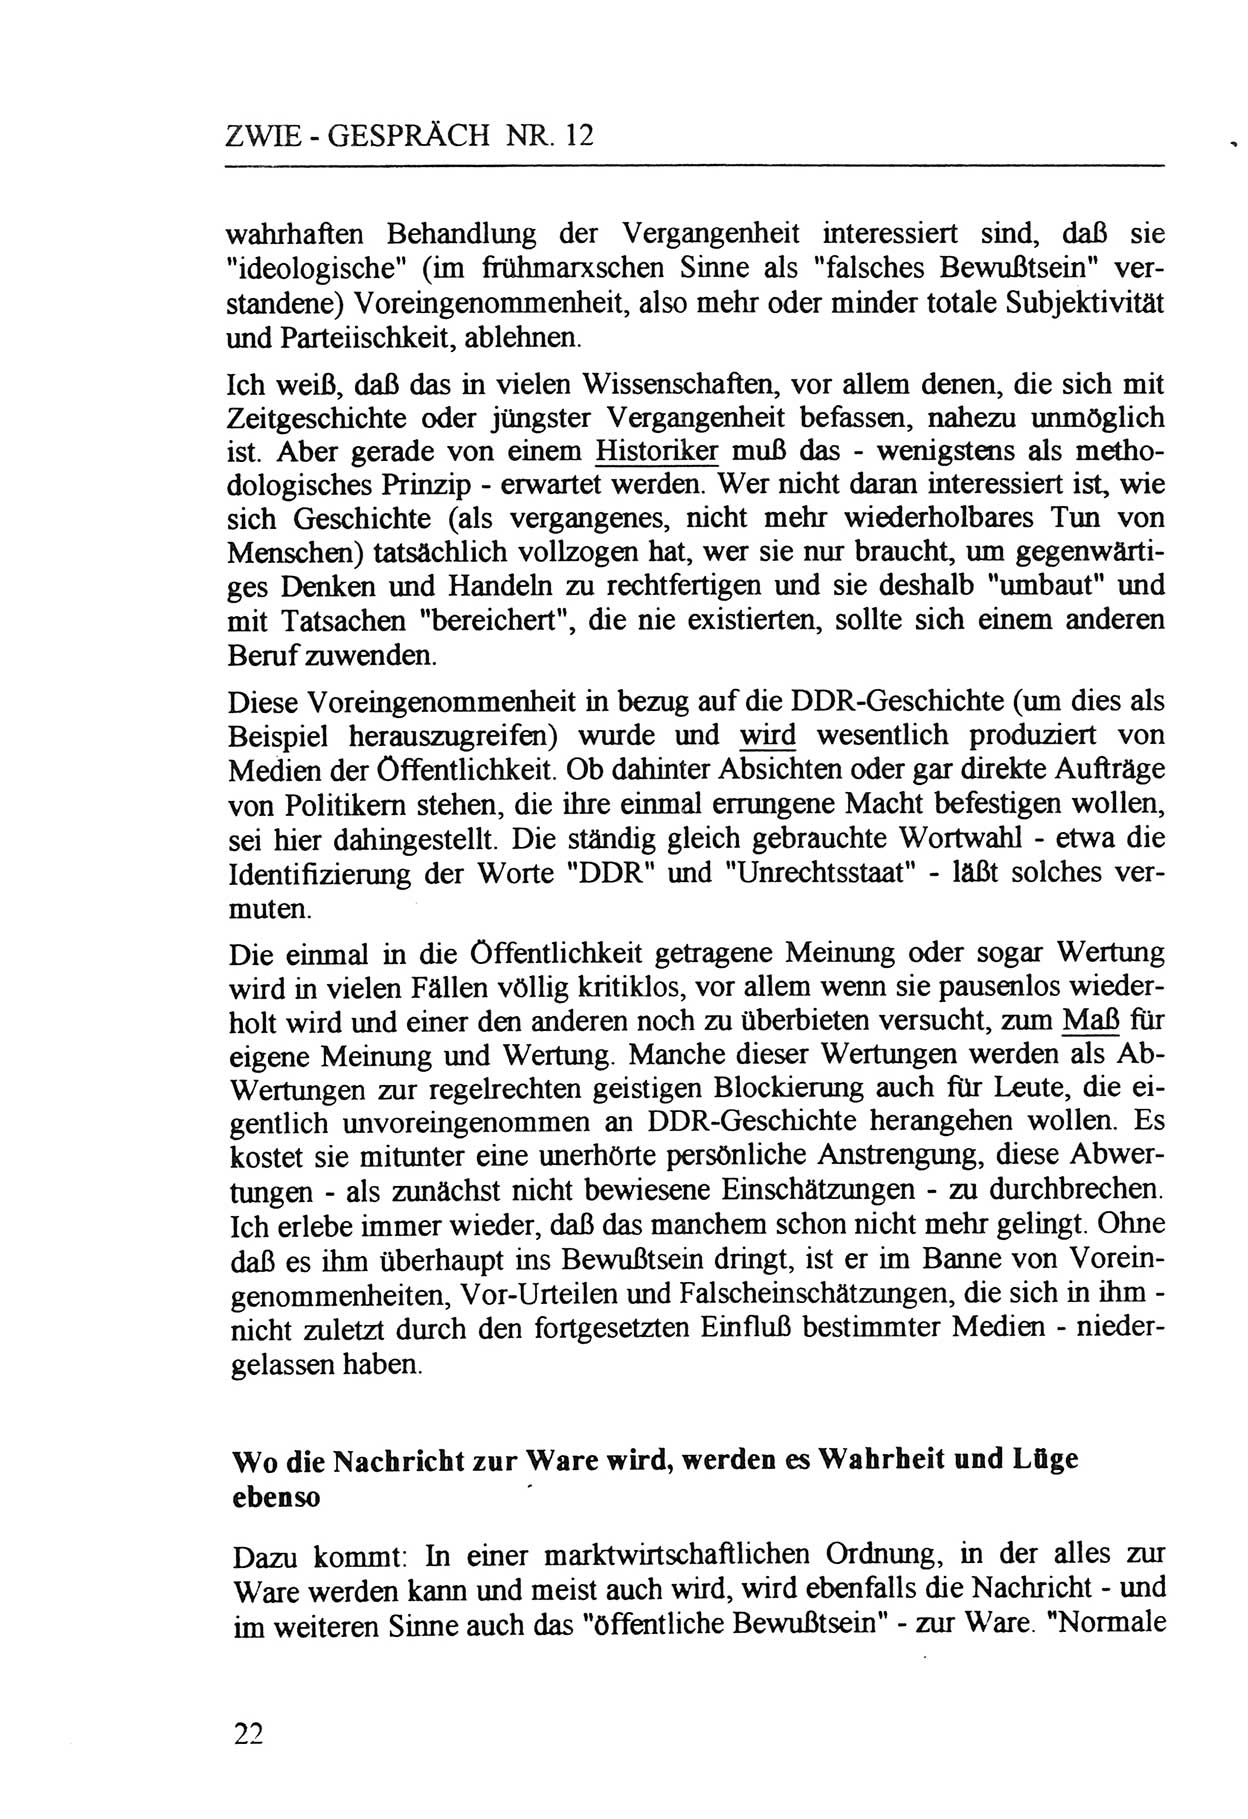 Zwie-Gespräch, Beiträge zur Aufarbeitung der Staatssicherheits-Vergangenheit [Deutsche Demokratische Republik (DDR)], Ausgabe Nr. 12, Berlin 1993, Seite 22 (Zwie-Gespr. Ausg. 12 1993, S. 22)